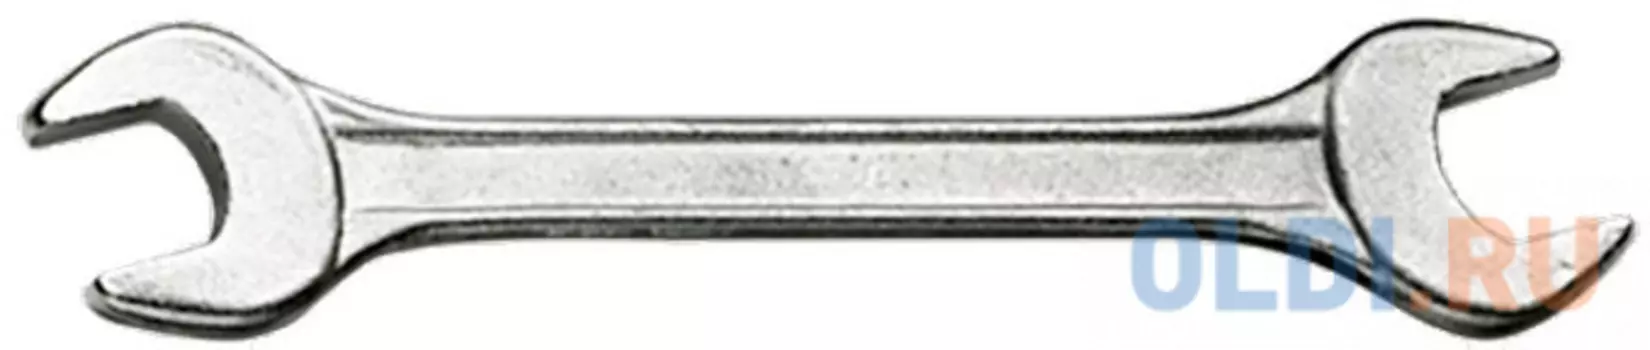 Ключ рожковый SPARTA 144515 (13 / 17 мм) хромированный